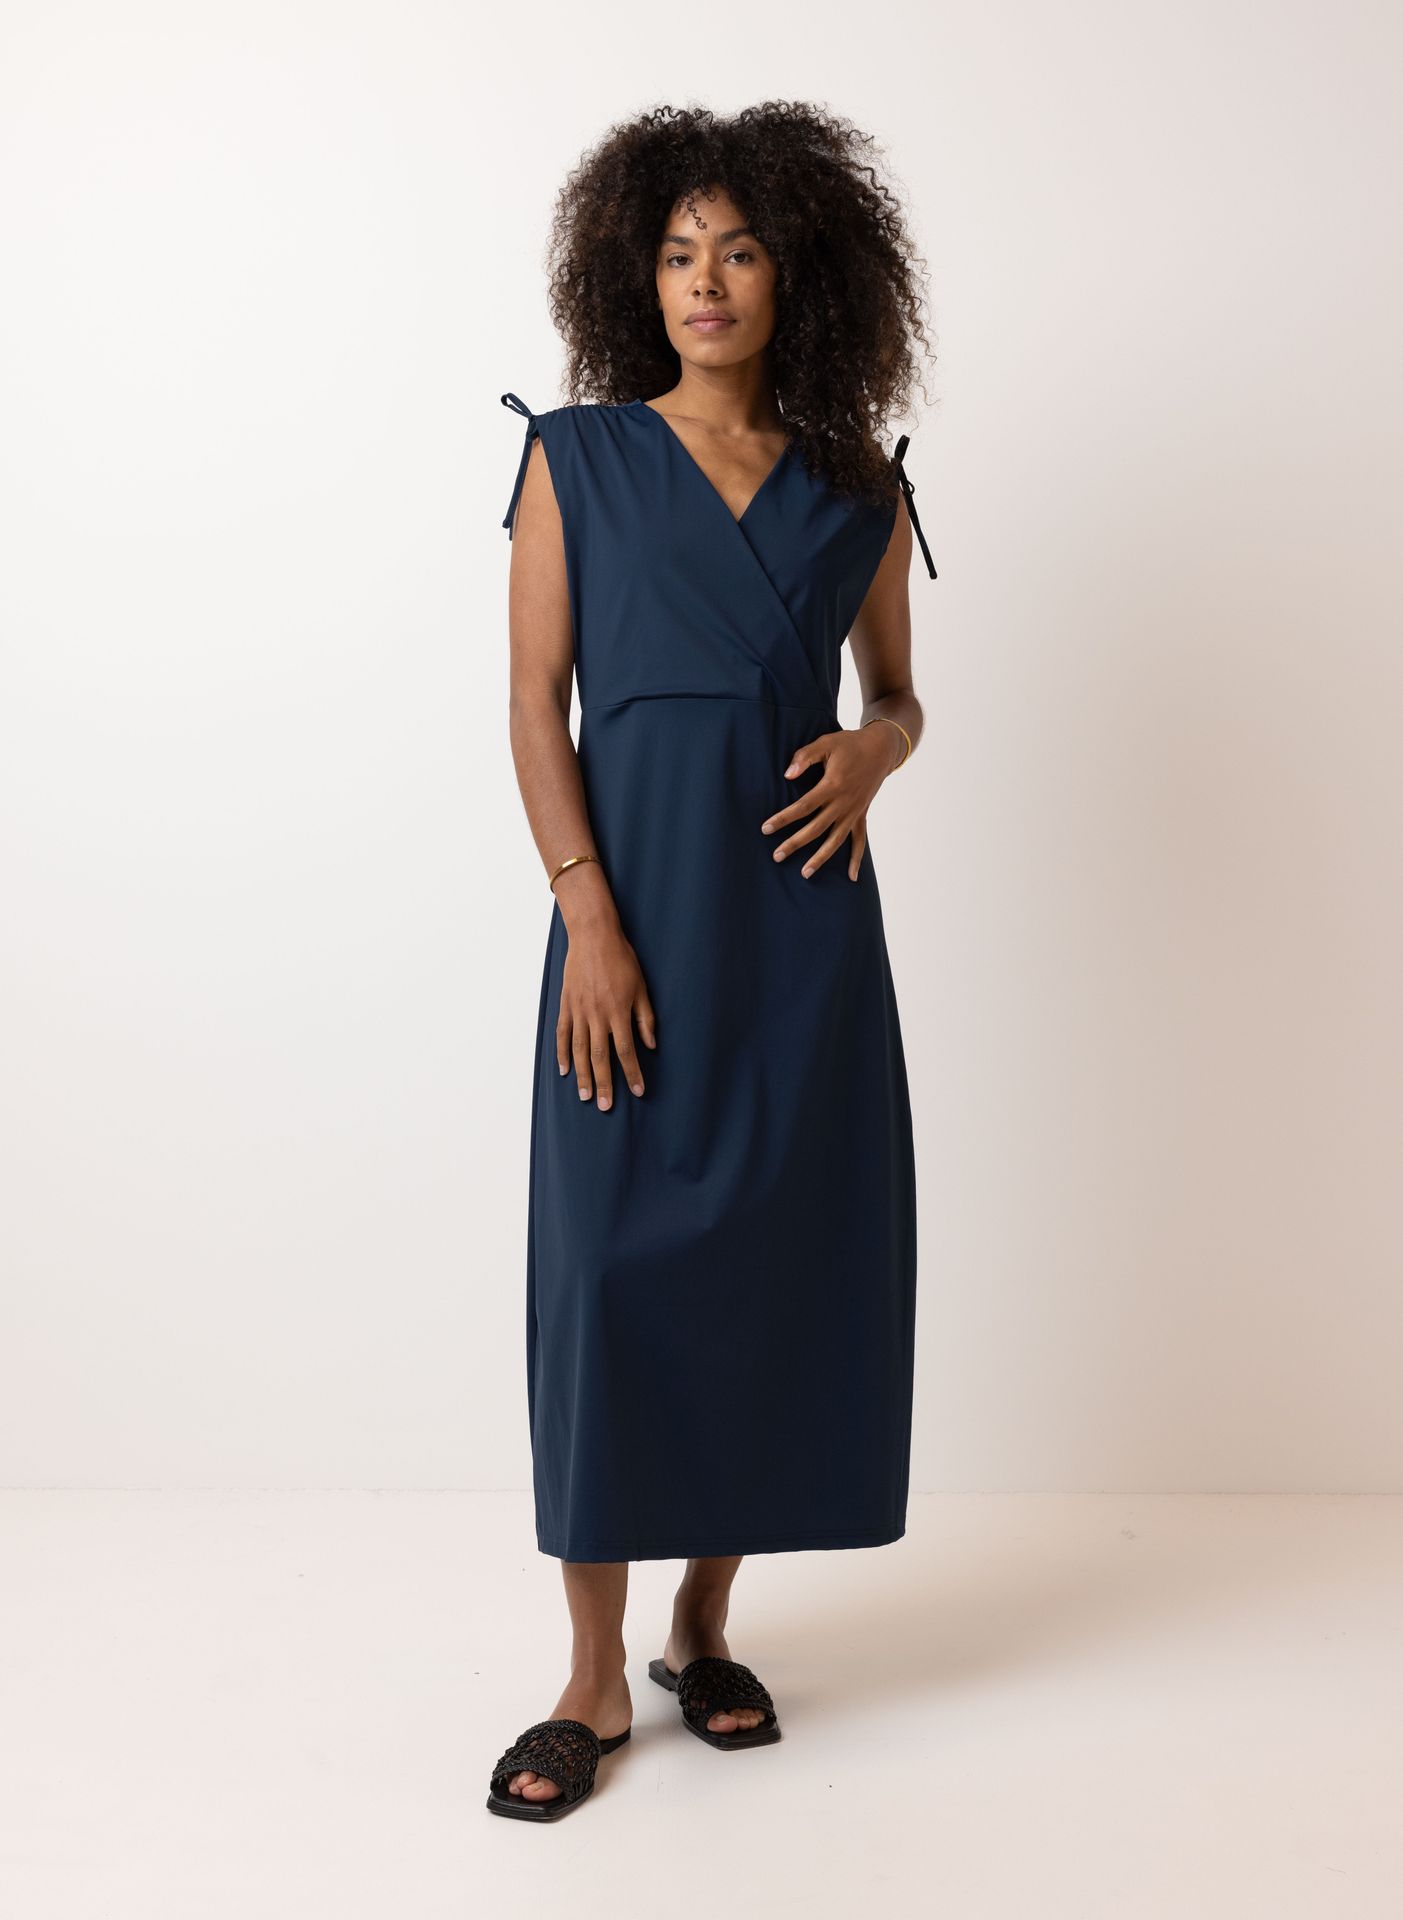 Norah Donkerblauwe maxi jurk travelstof dark blue 213473-499